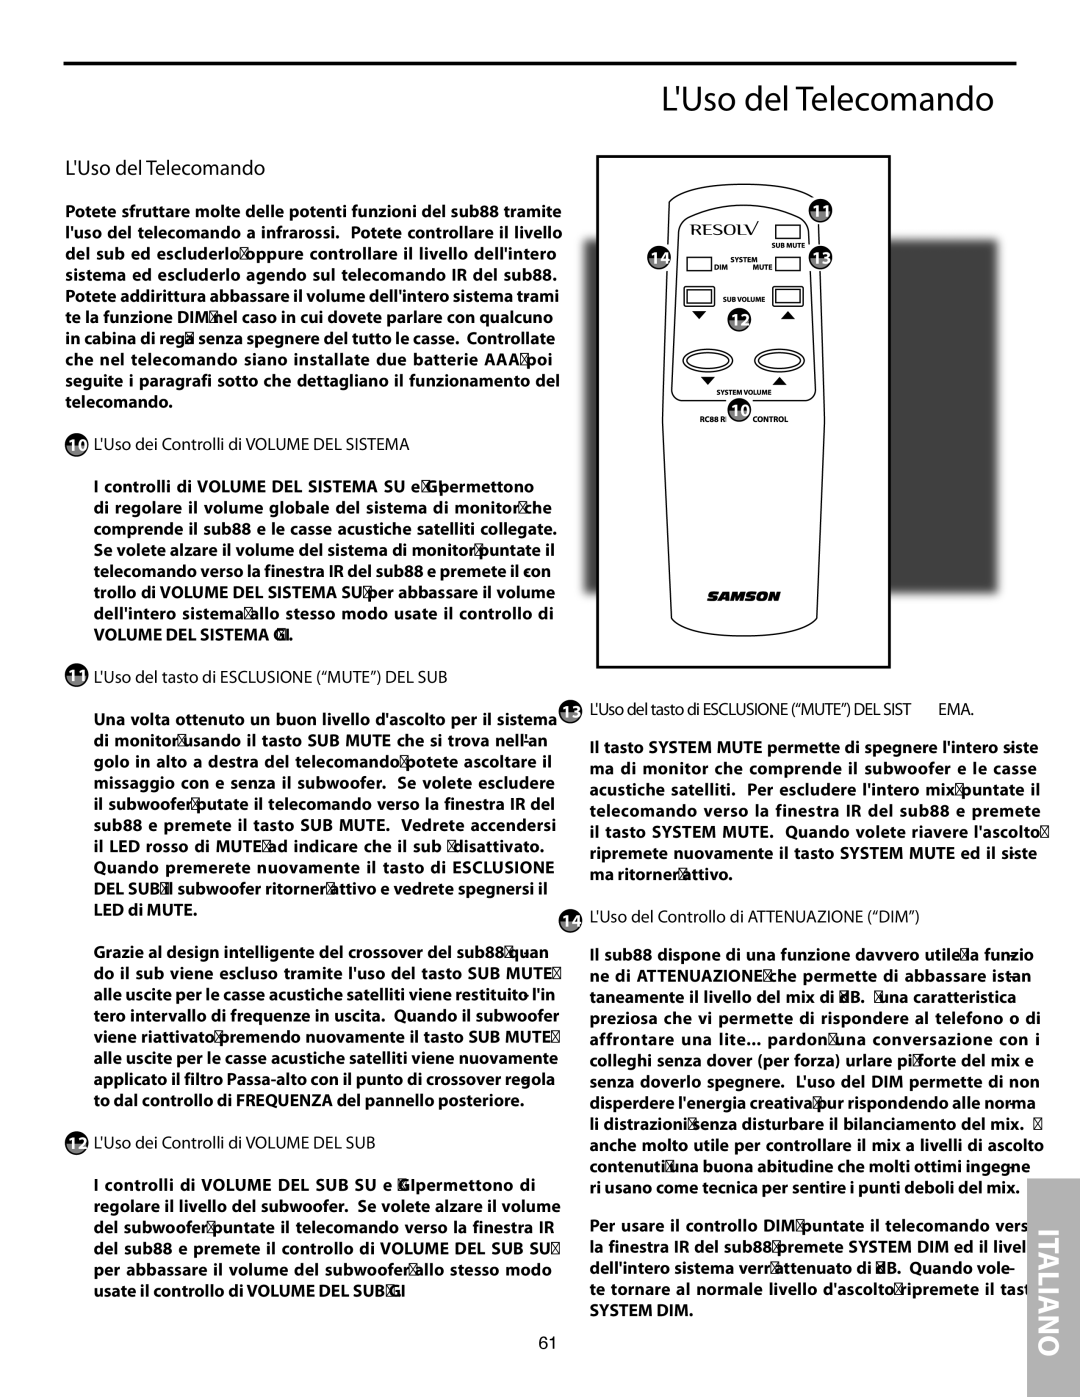 Samson SUB88 manual LUso del Telecomando 